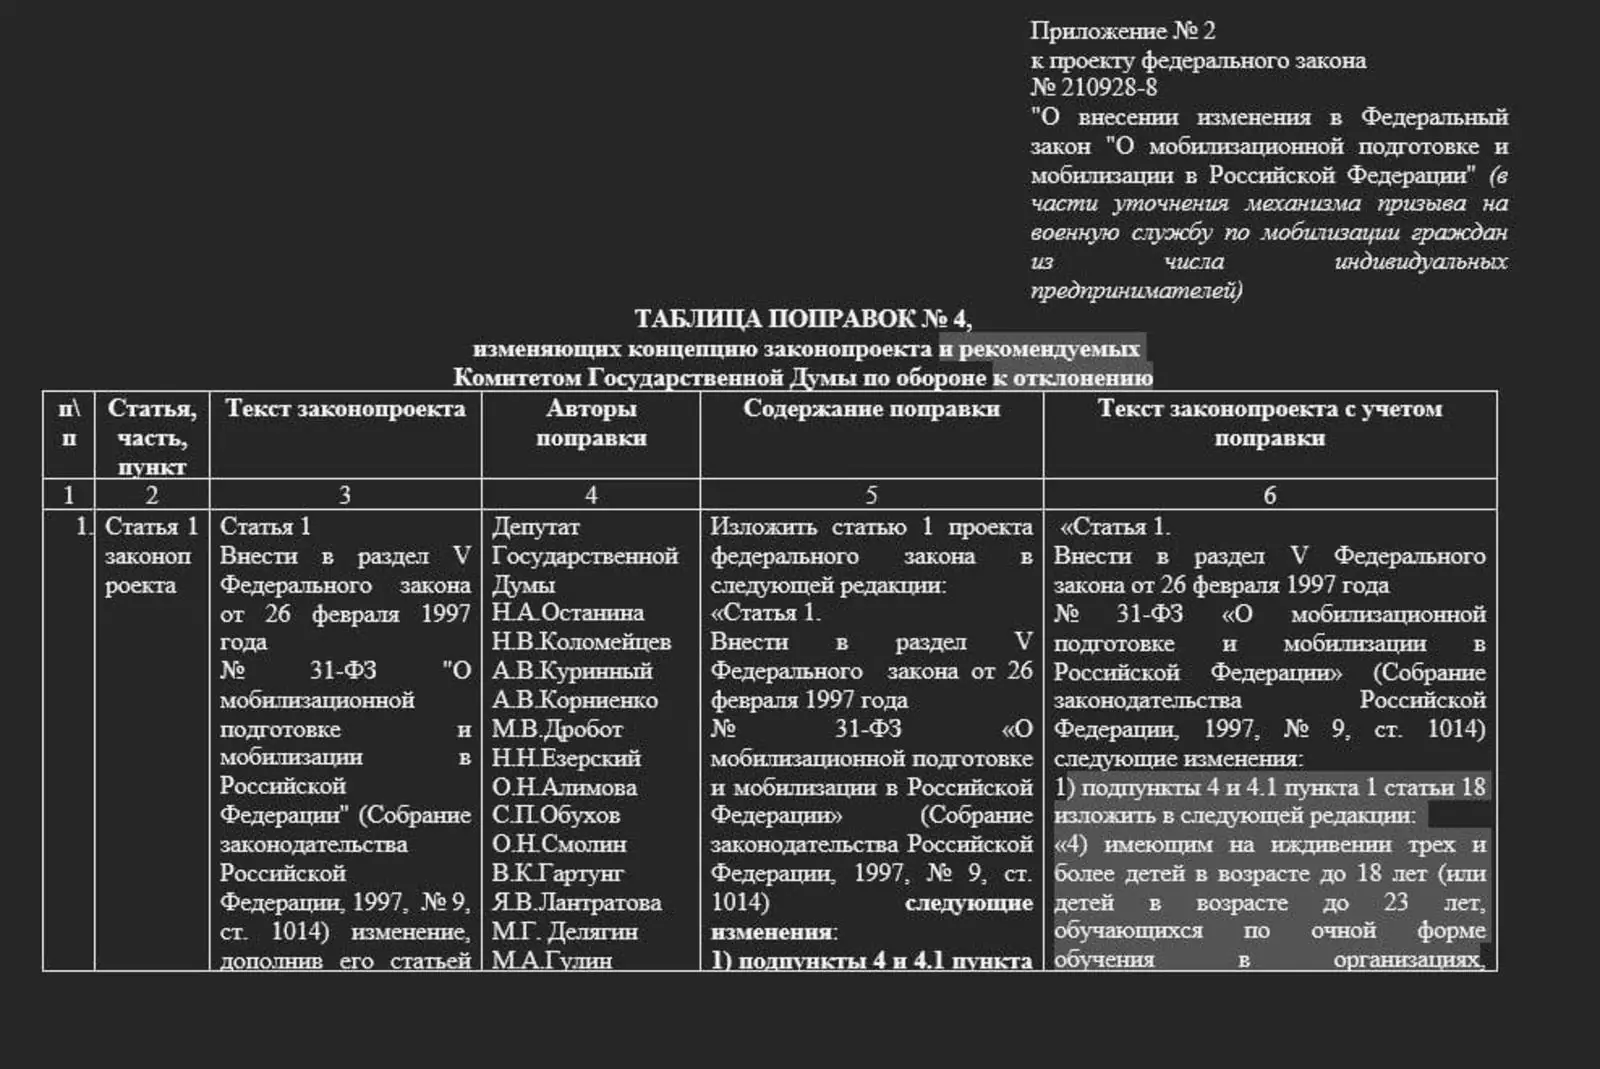 Отсрочка для многодетных отцов 3 ребенка. Очереди мобилизации в Российской Федерации таблица. Поправки об освобождении от мобилизации.